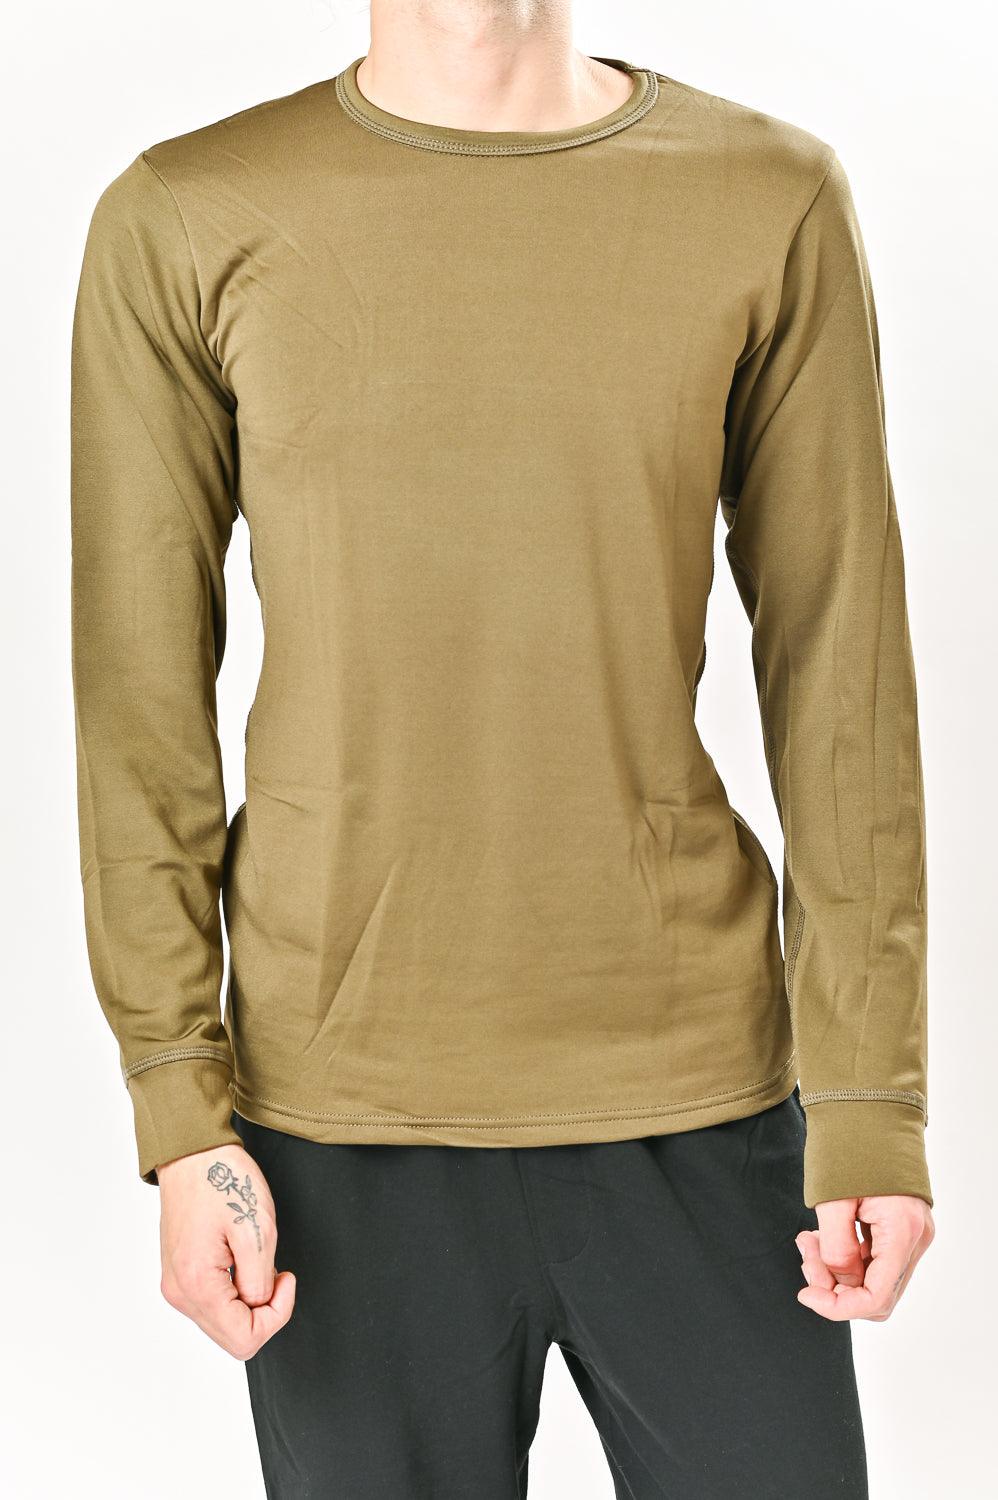 DIADORA - חולצה תרמית צווארון עגול בצבע זית - MASHBIR//365